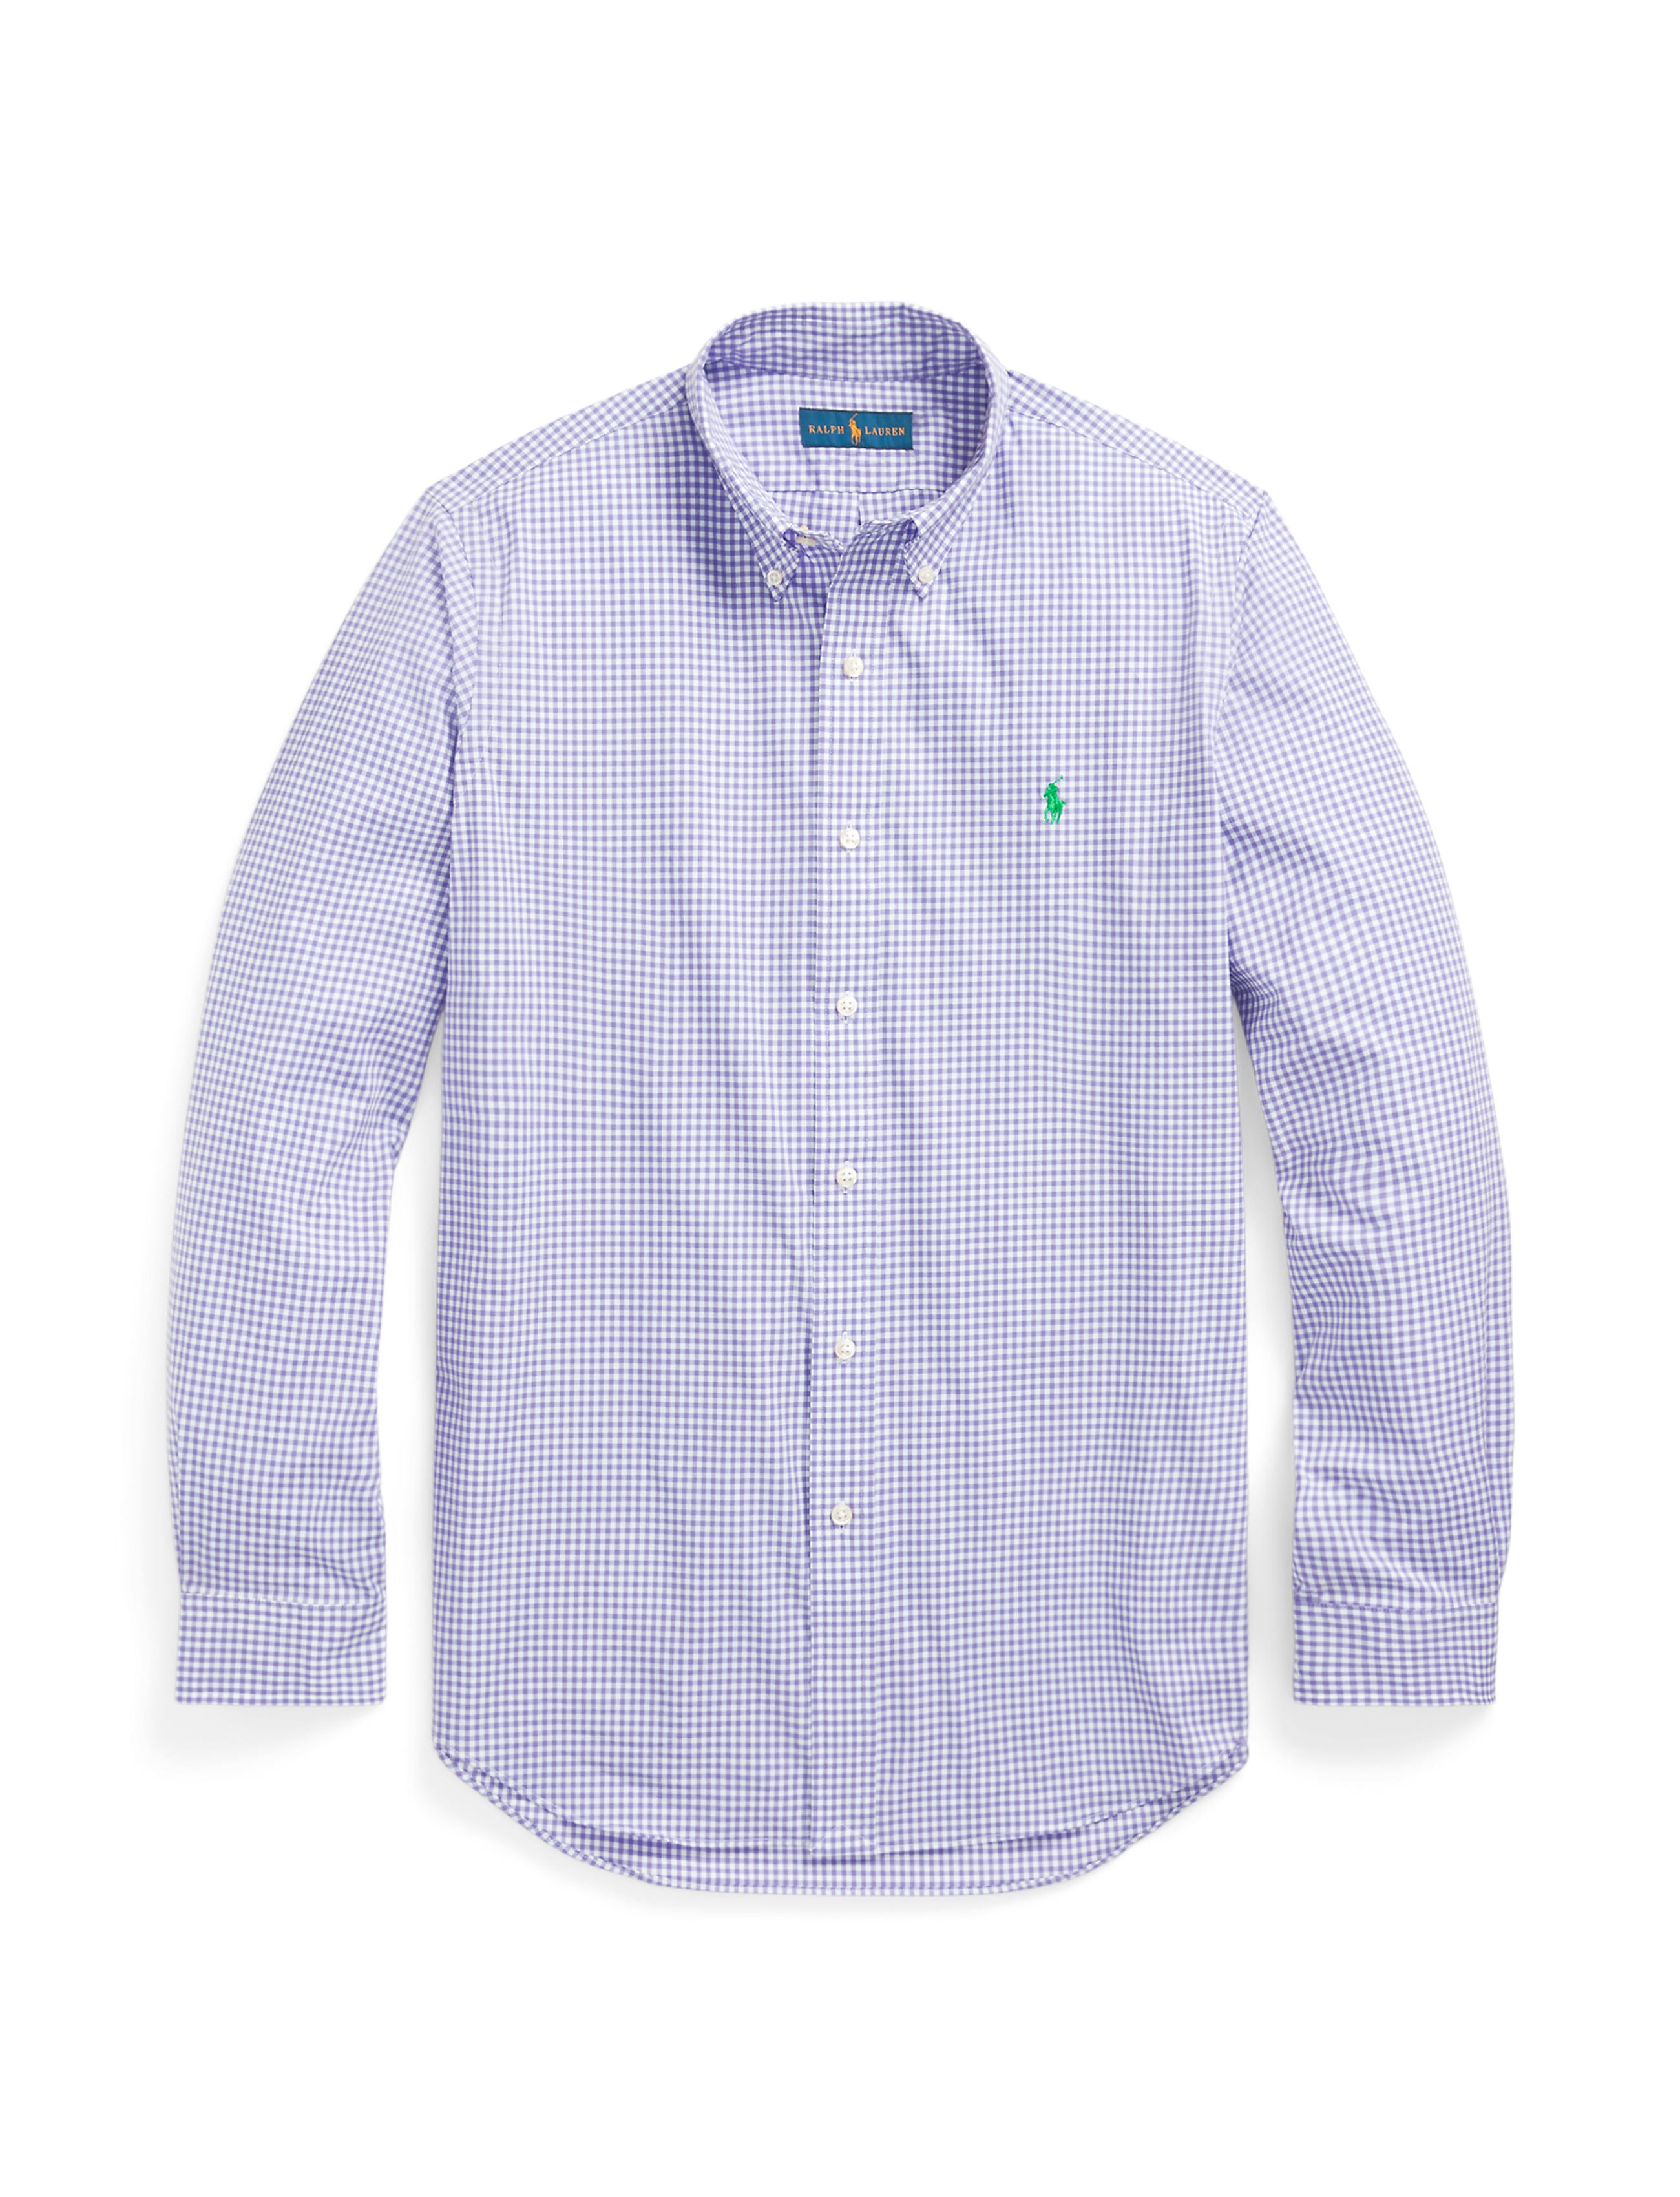 Polo Ralph Lauren Custom Fit Poplin Shirt Lavender/White – 